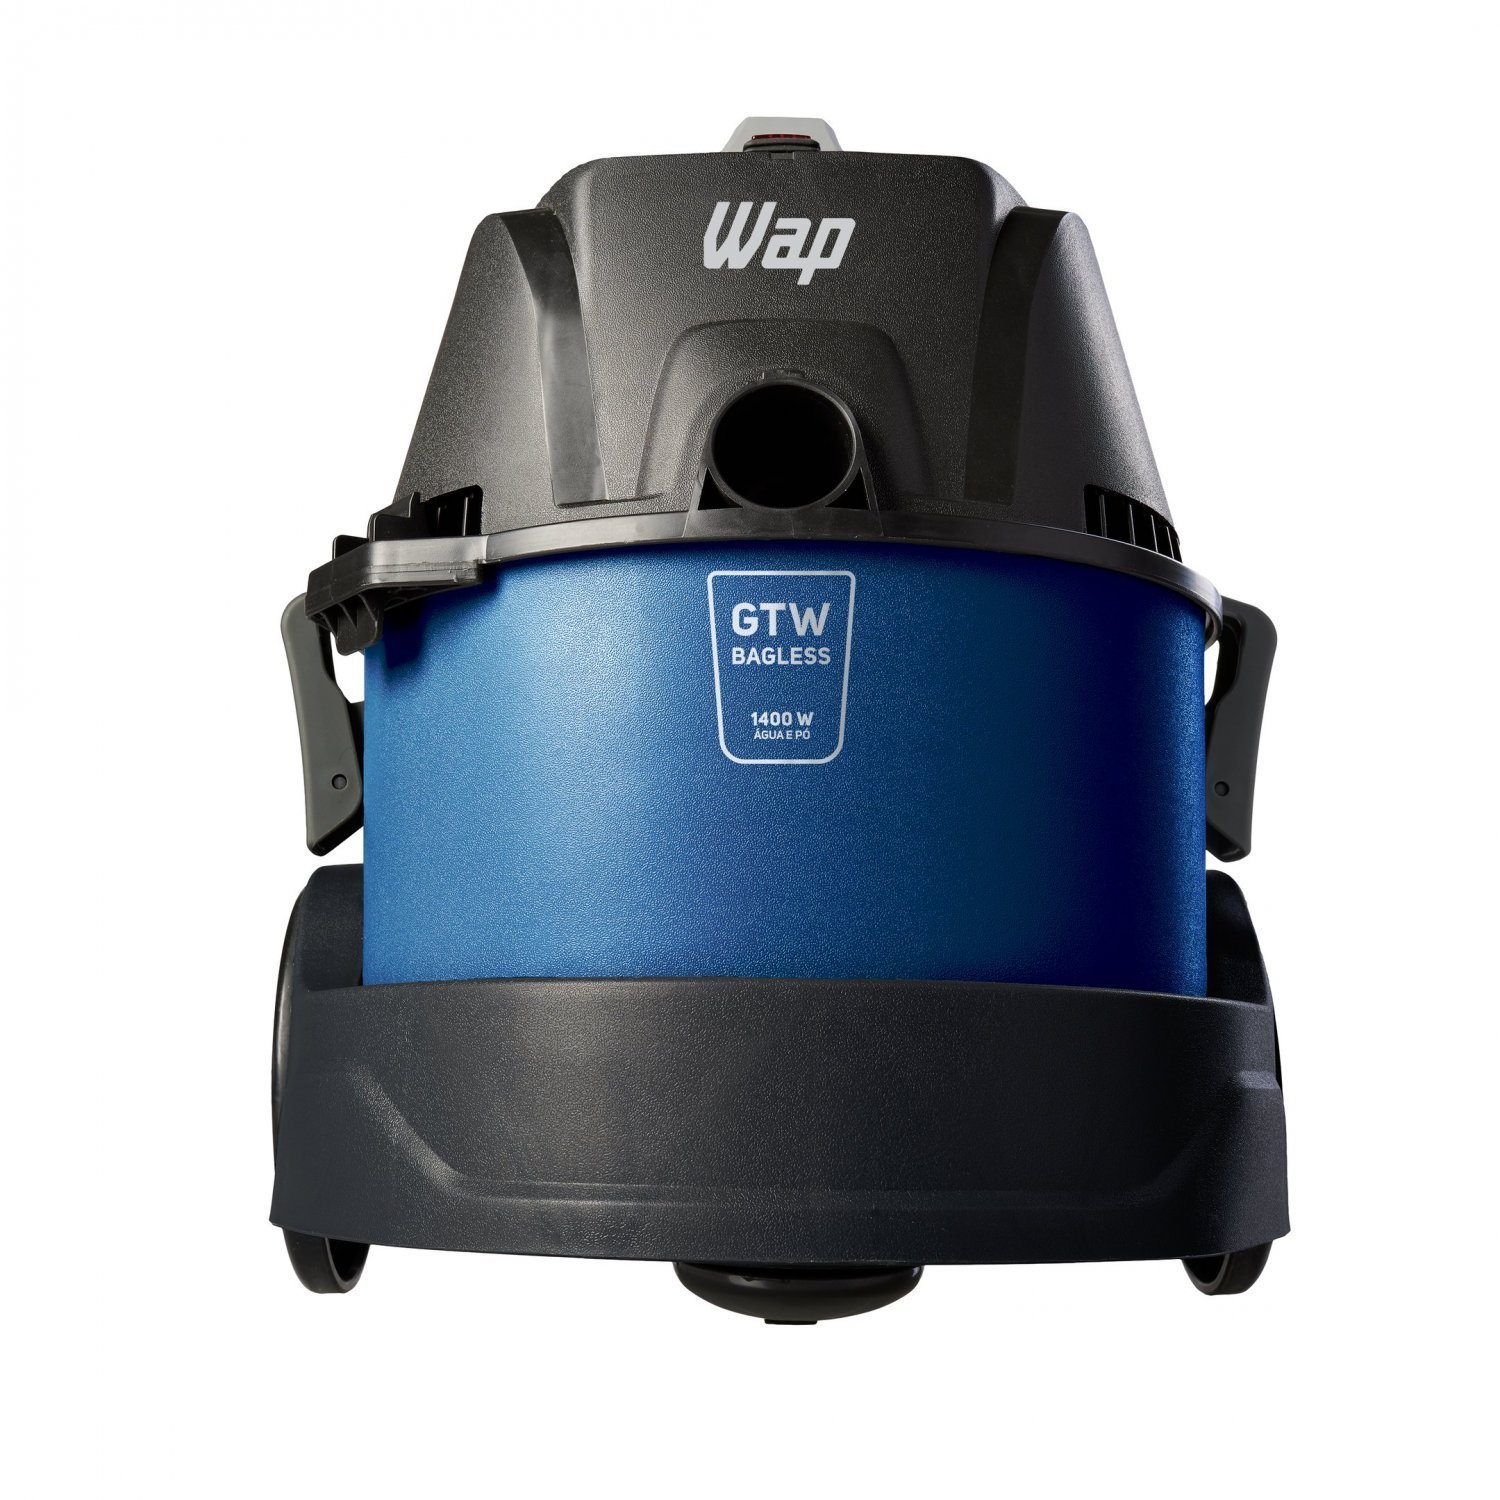 Aspirador de Água e Pó WAP GTW Bagless Alça Ergonômica 6L com Bocal de Sopro 1400W 220V Azul/Preto - 8